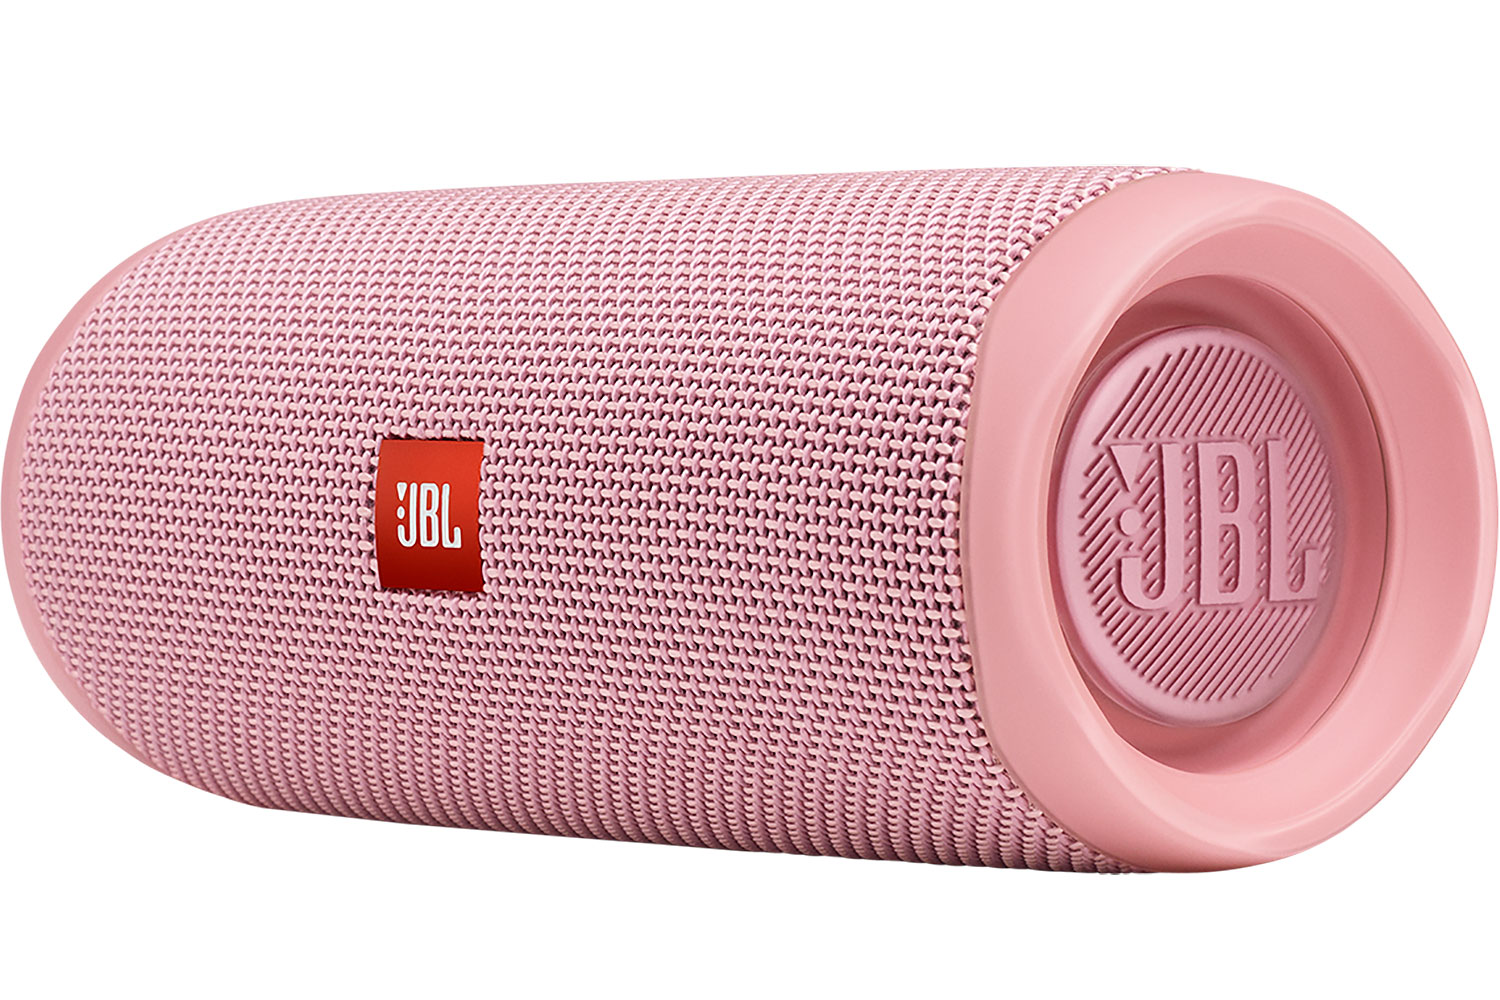 JBL Flip 5 speaker in pink